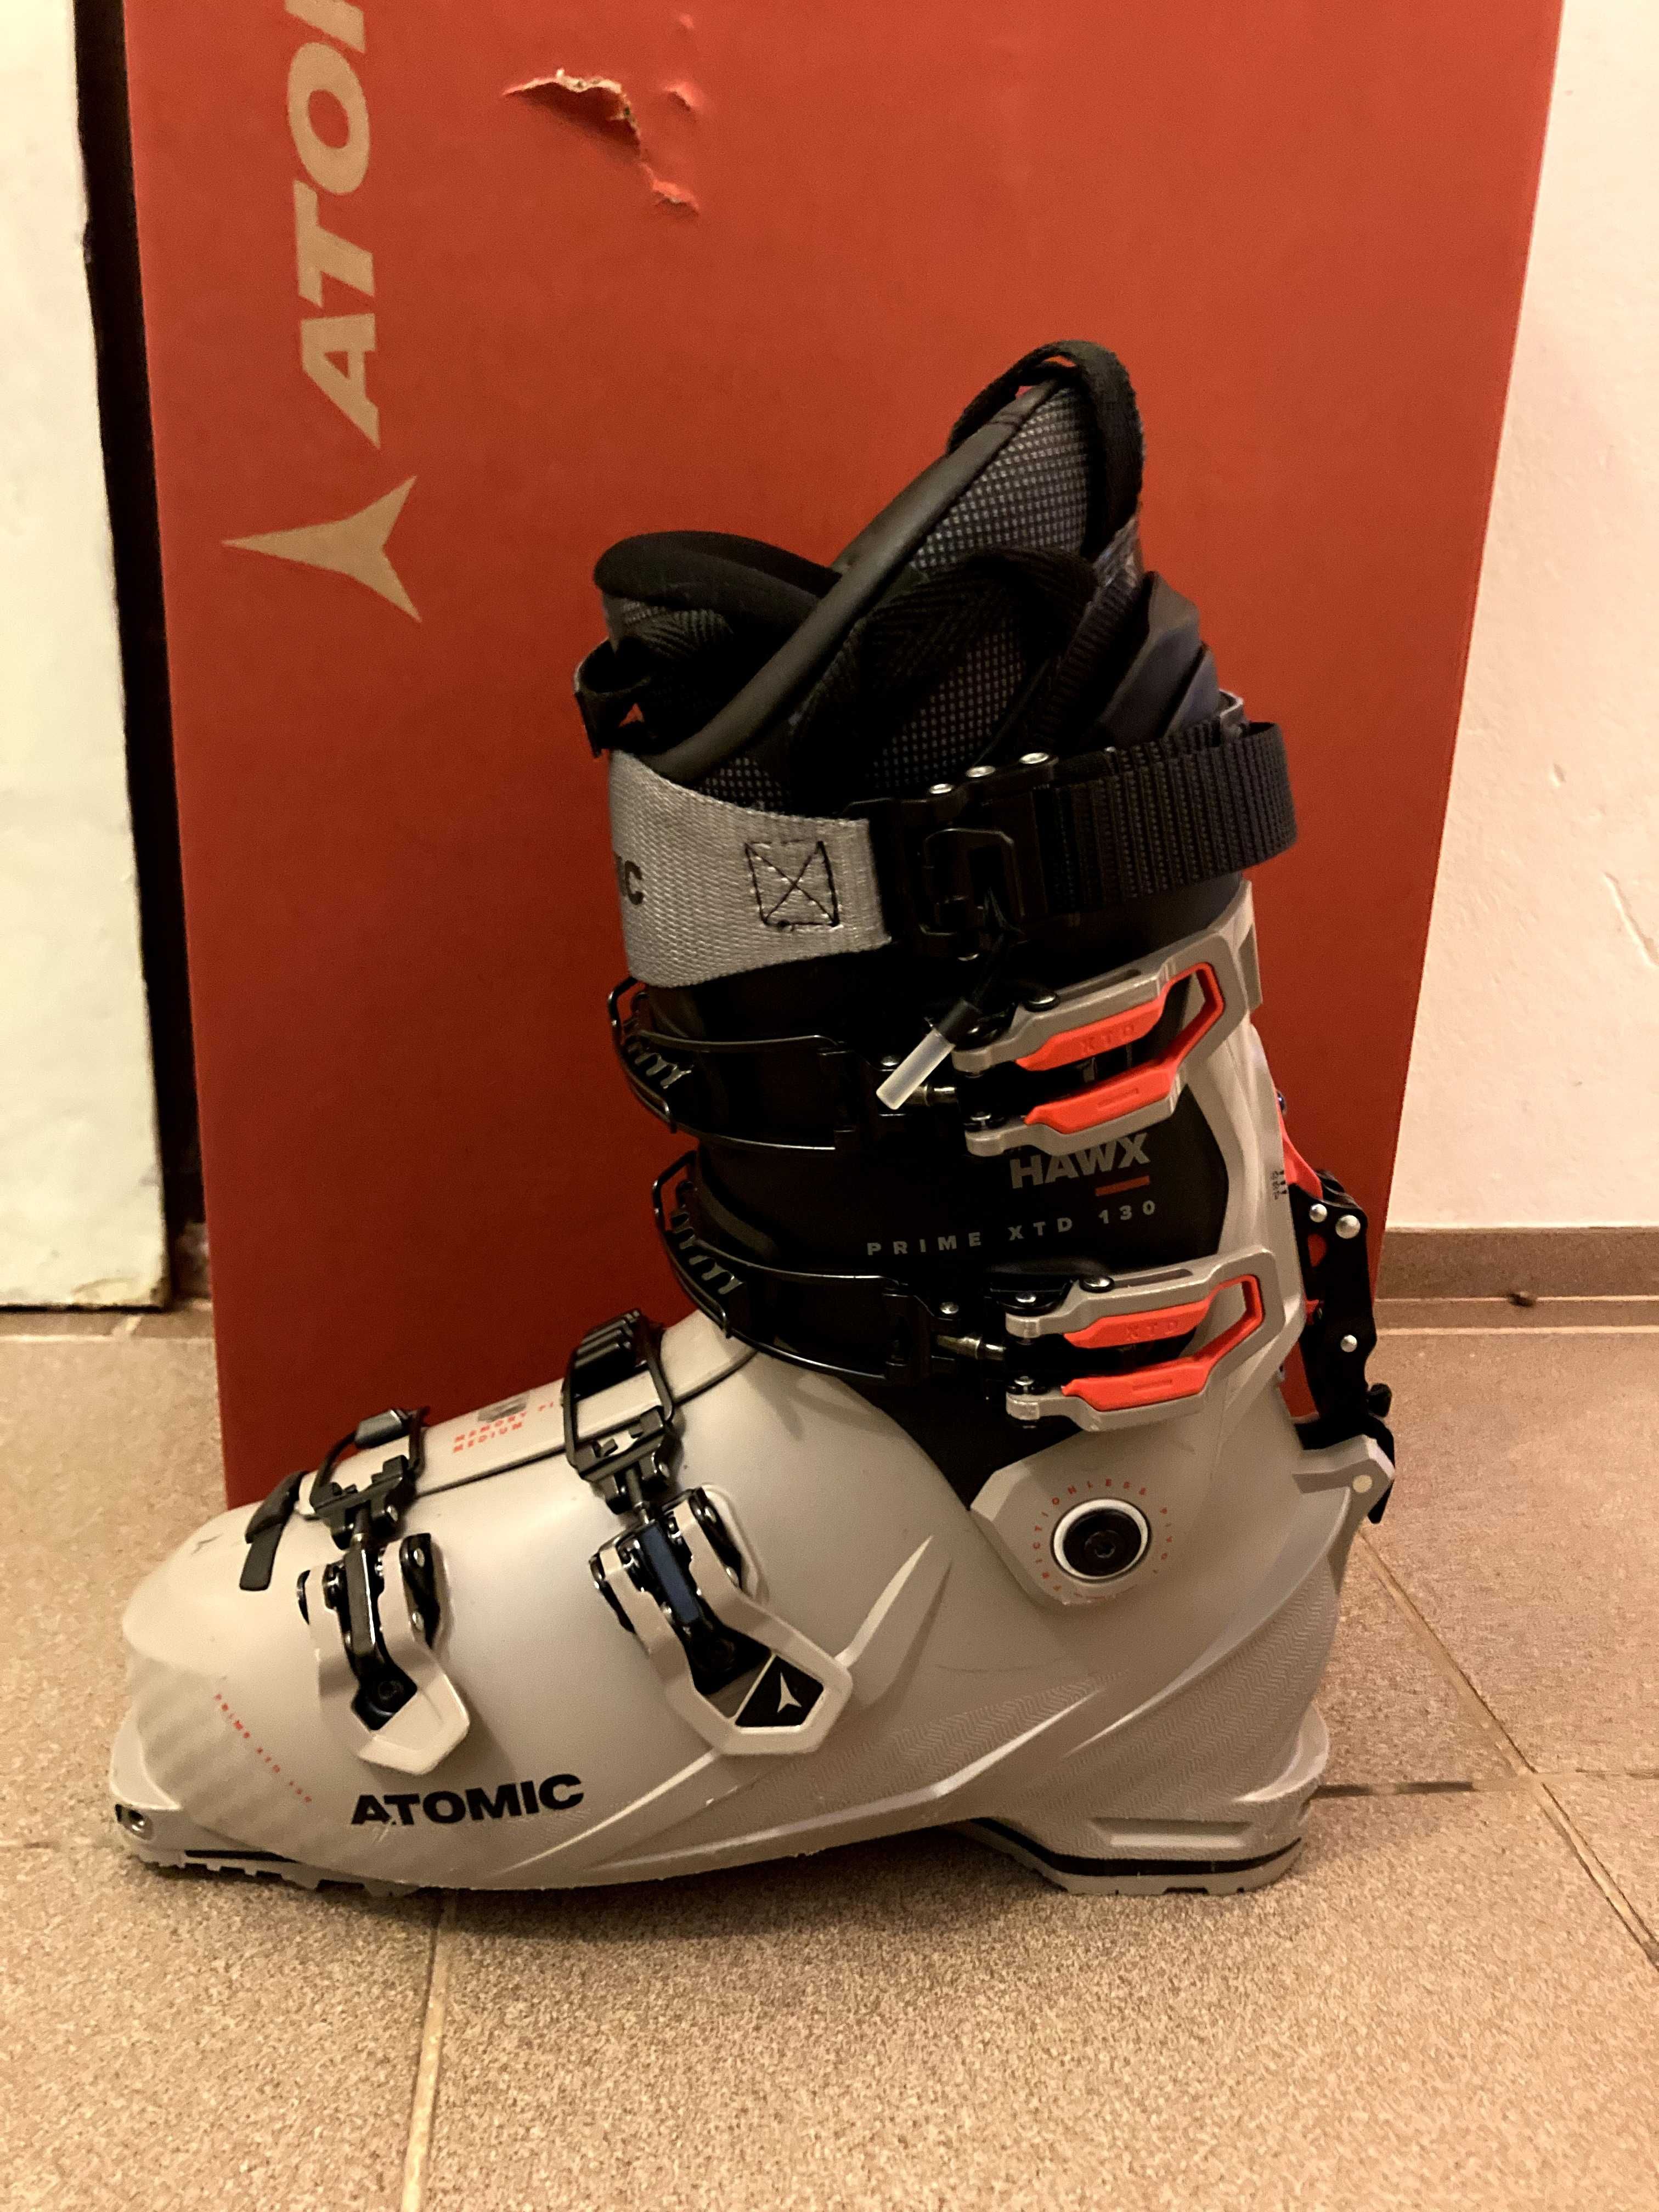 Buty narciarskie skitour/freeride Atomic Hawx Prime xtd 130 GW 28 cm